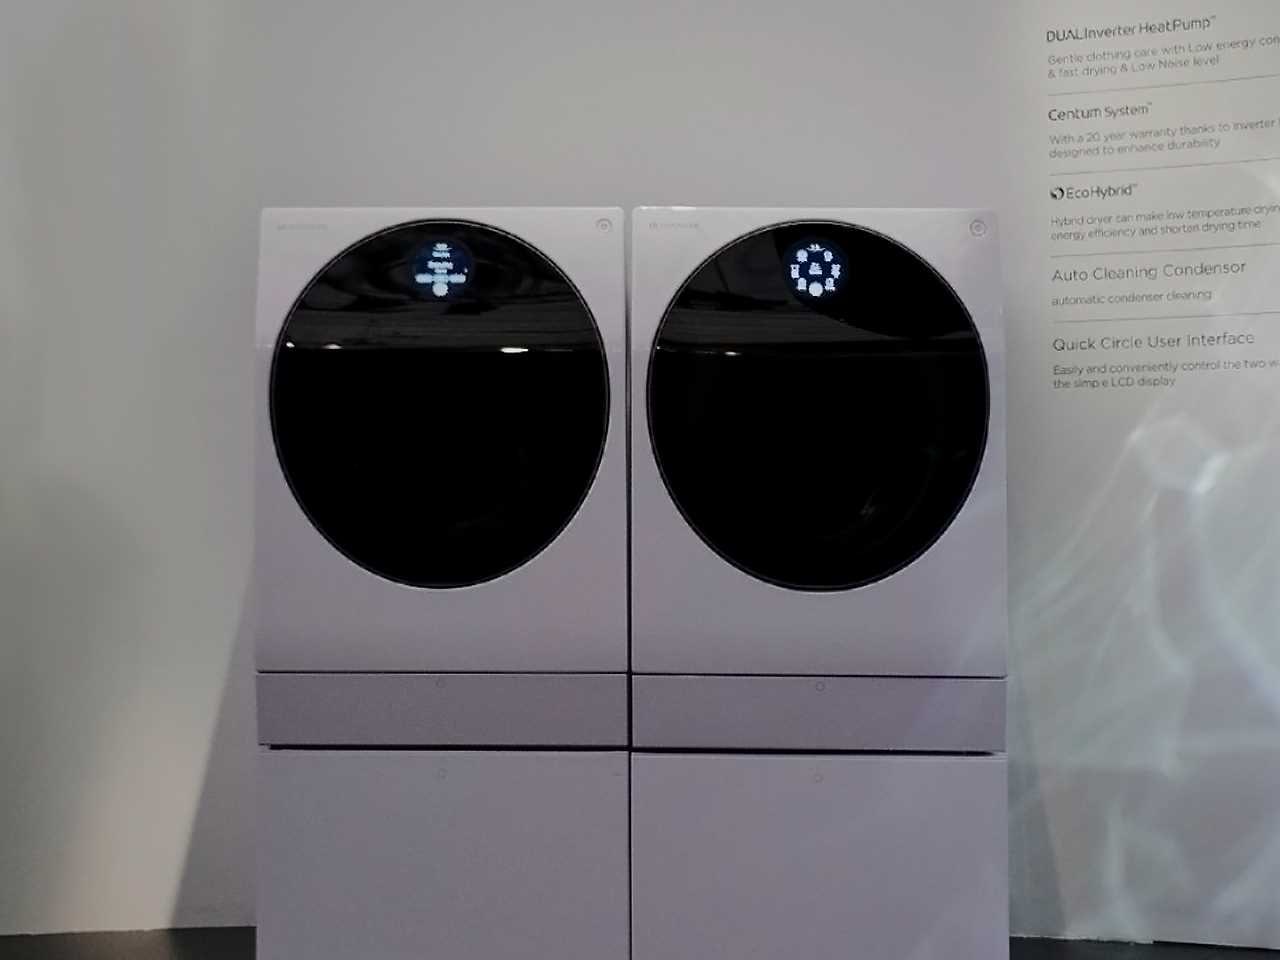  Стиральная машина и сушилка LG SIGNATURE, представленные на выставке IFA 2018